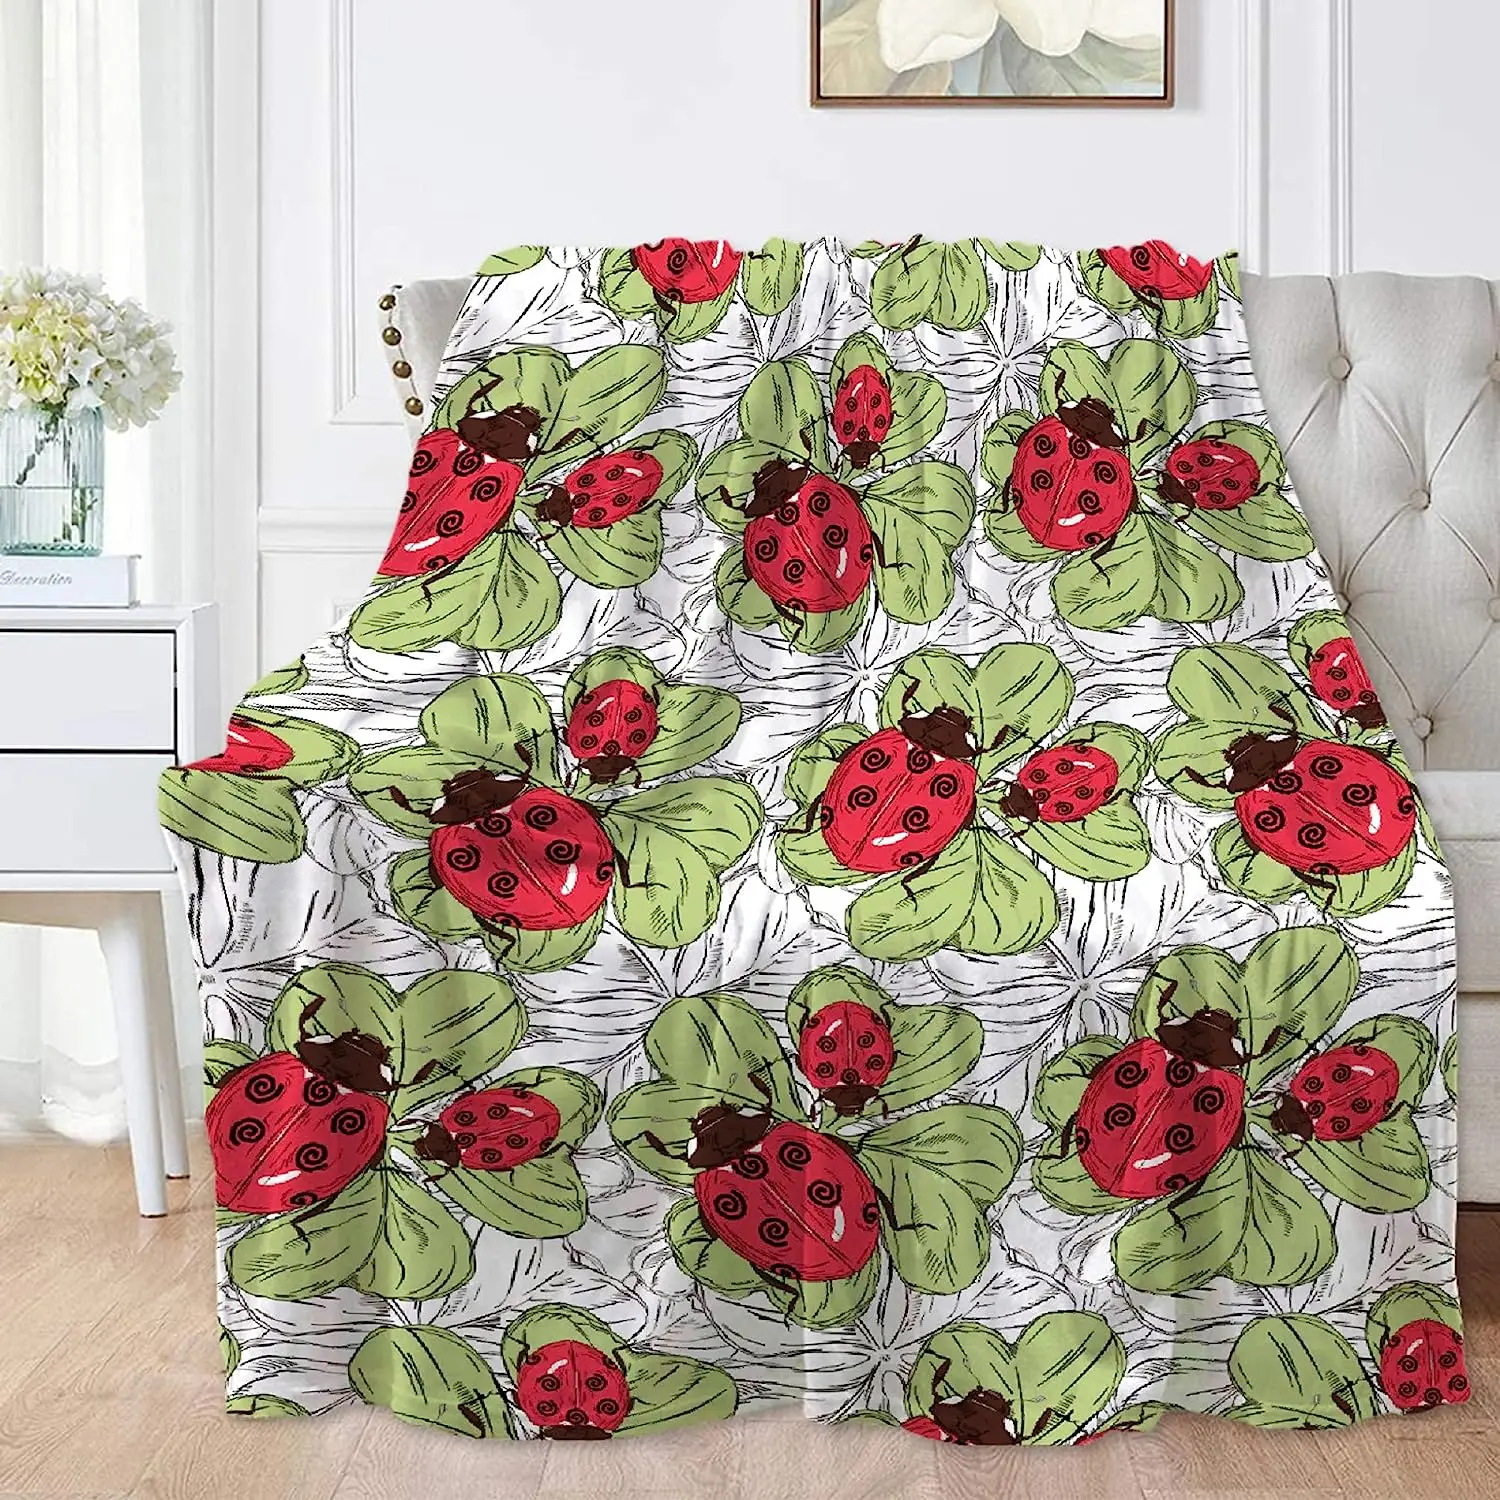 

Одеяло с красной божьей коровкой и зелеными листьями, супермягкое теплое легкое пушистое плюшевое Флисовое одеяло, покрывало для кровати, дивана, все